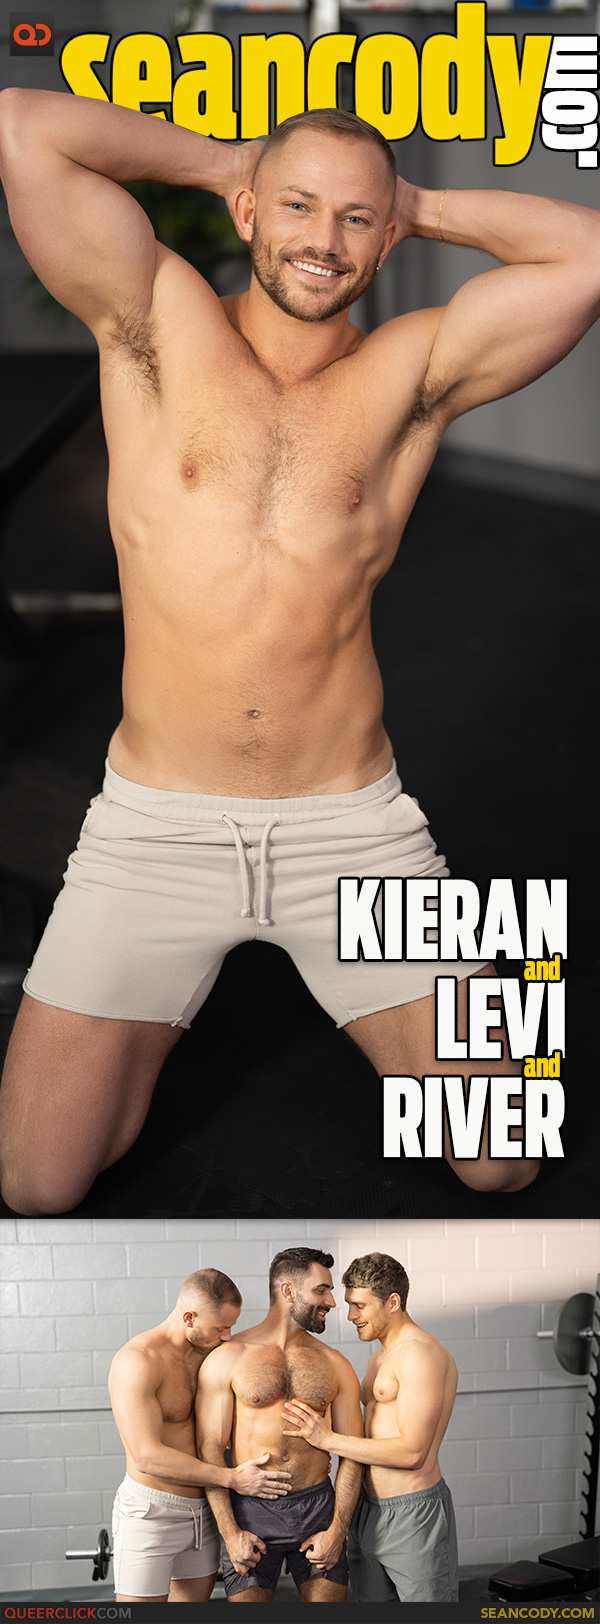 Sean Cody: Kieran, River and Levi